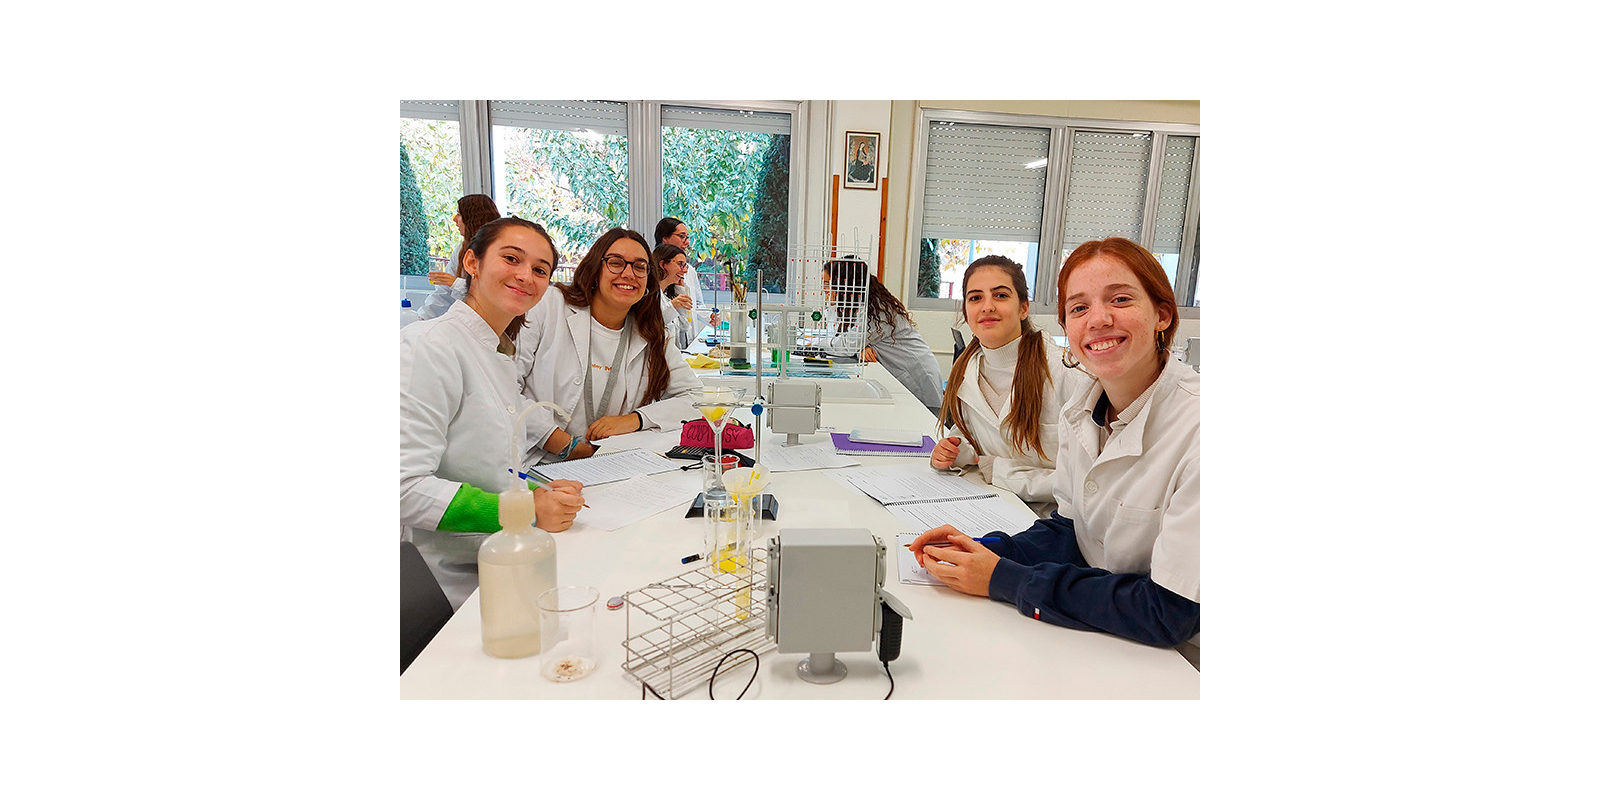 Pràctiques de laboratori a l'Escola La Vall. FOTO: Cedida